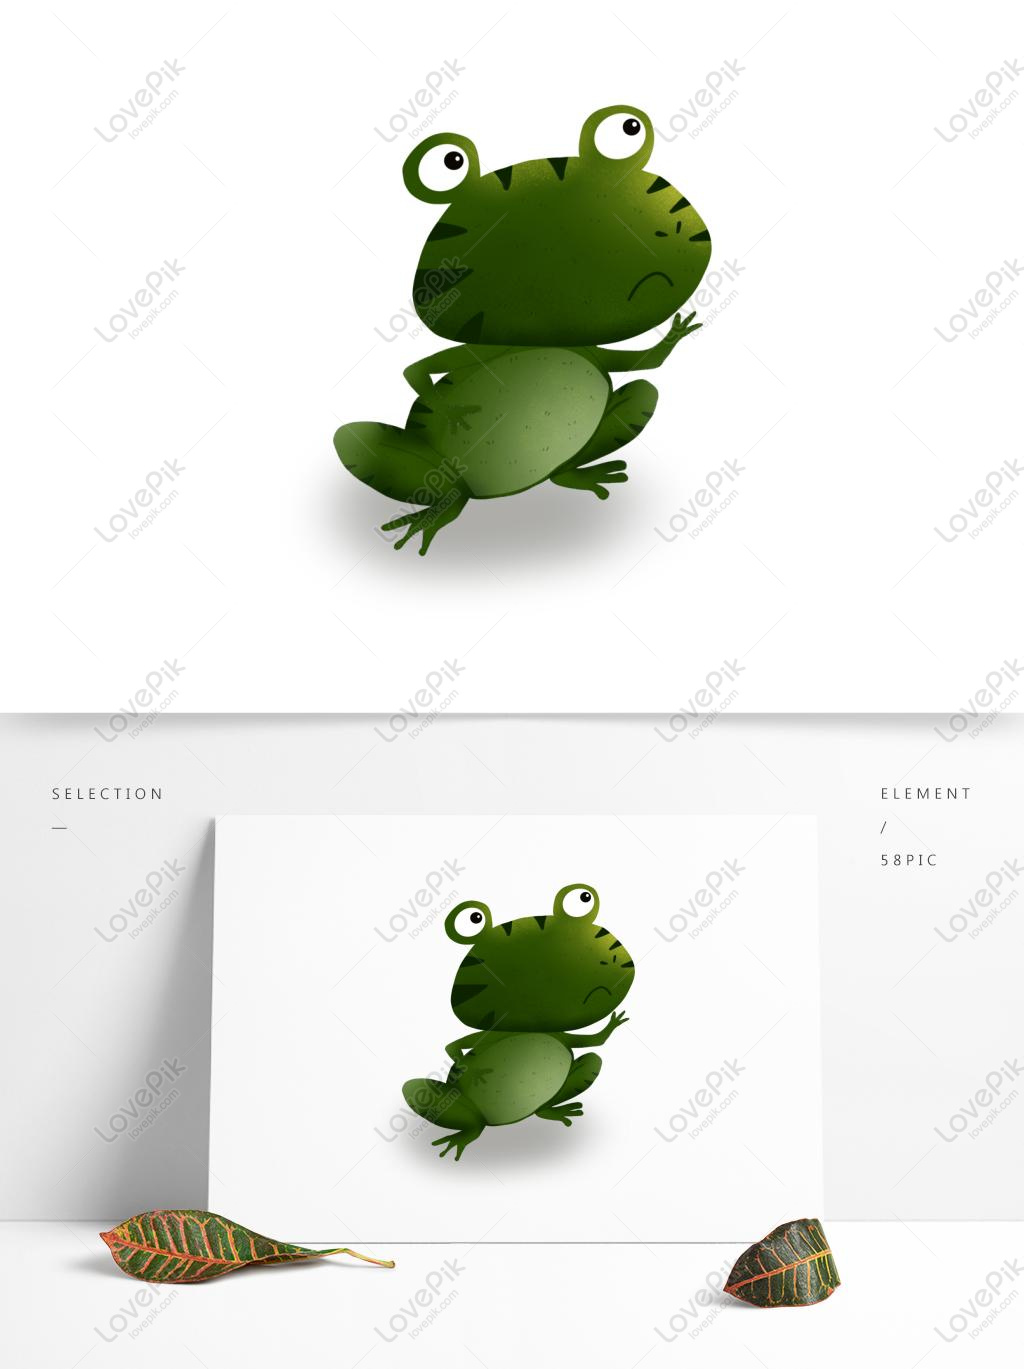 만화 개구리 요소 디자인 일러스트 Png 및 벡터 이미지, 무료 다운로드 - Lovepik